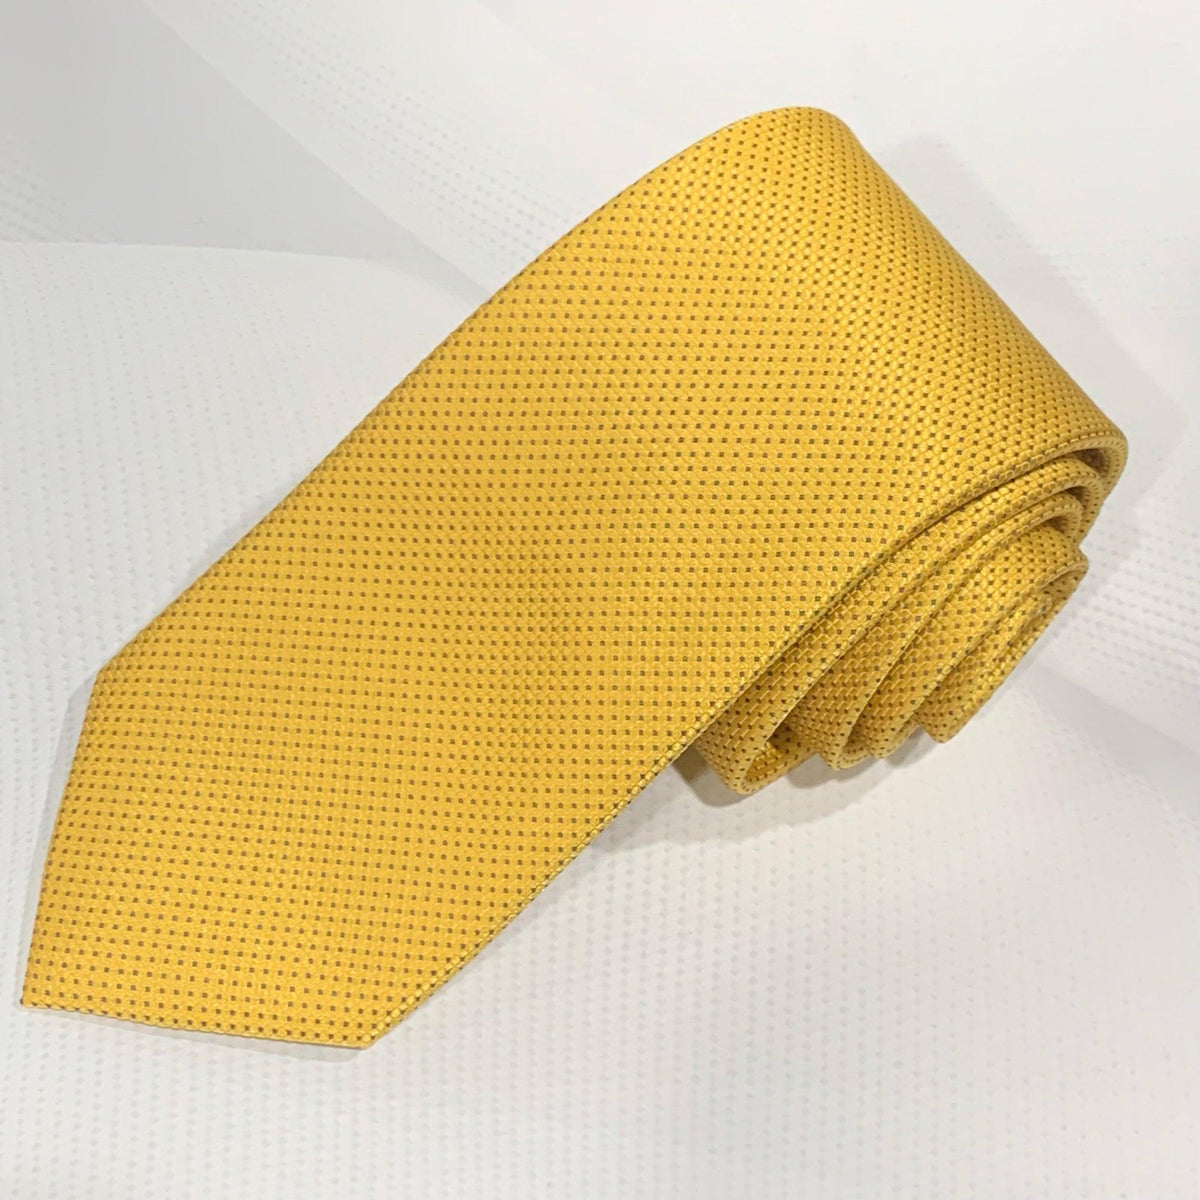 X15515-14 Silk Tie - Harrys for Menswear